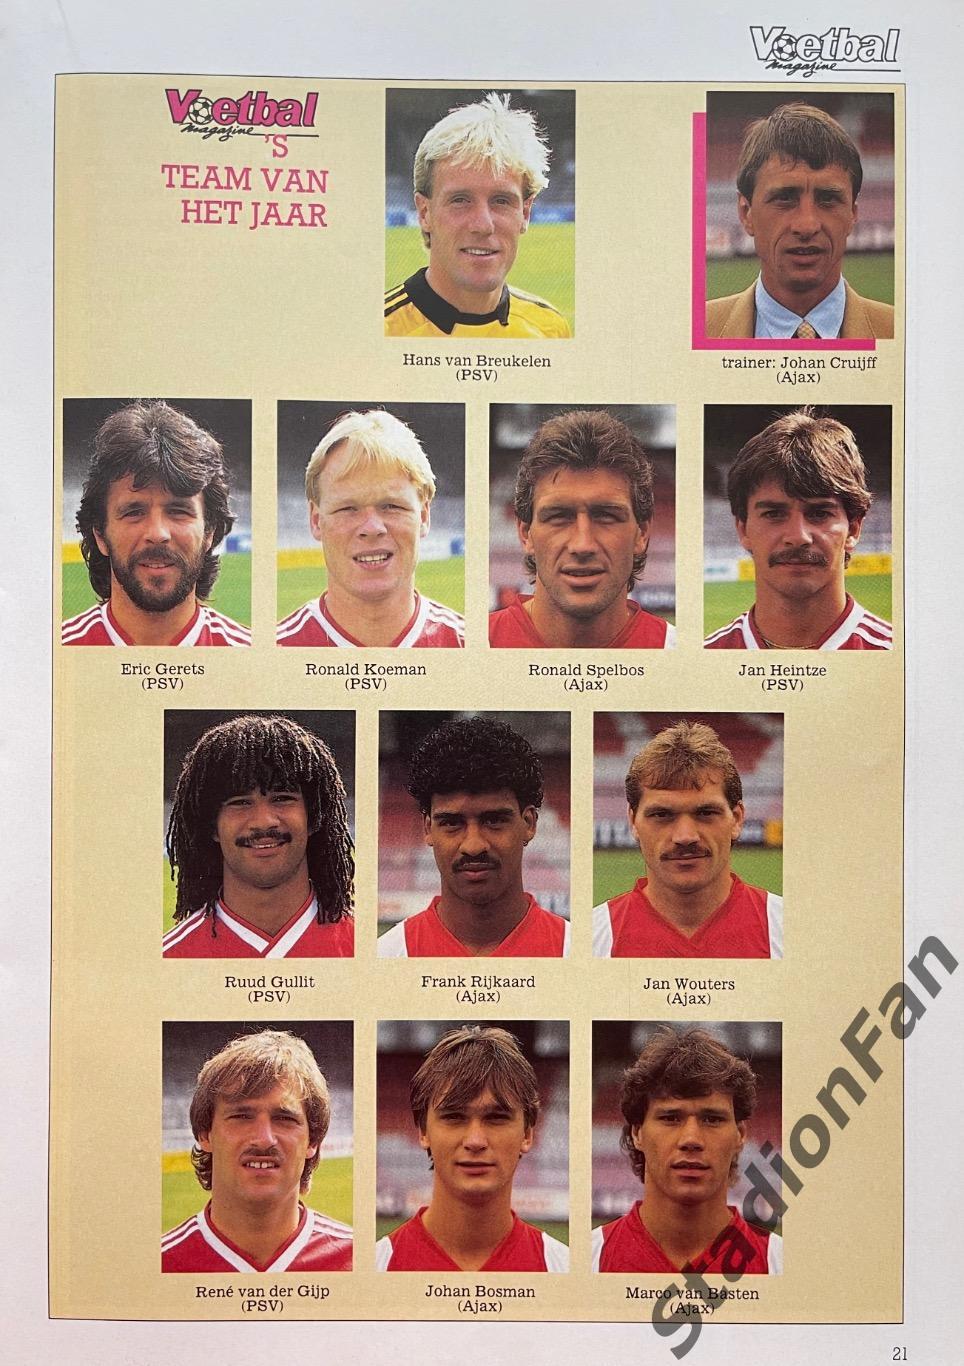 Журнал Voetbal - 1985 год. 1